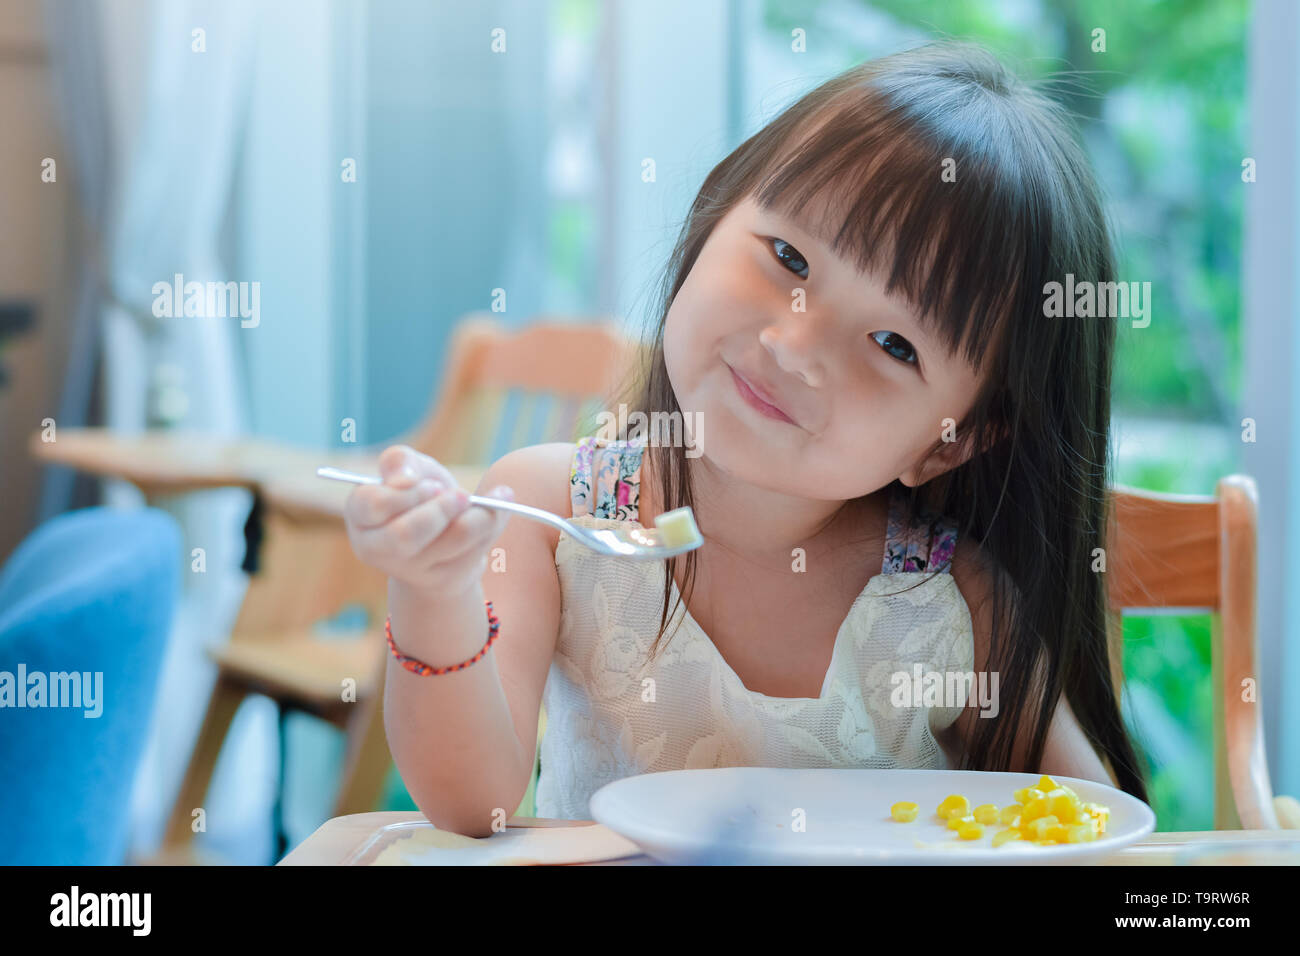 Piccolo bambino asiatico ragazza avente la prima colazione al mattino con un felice volto sorridente e mostrando il cibo su un cucchiaio Foto Stock